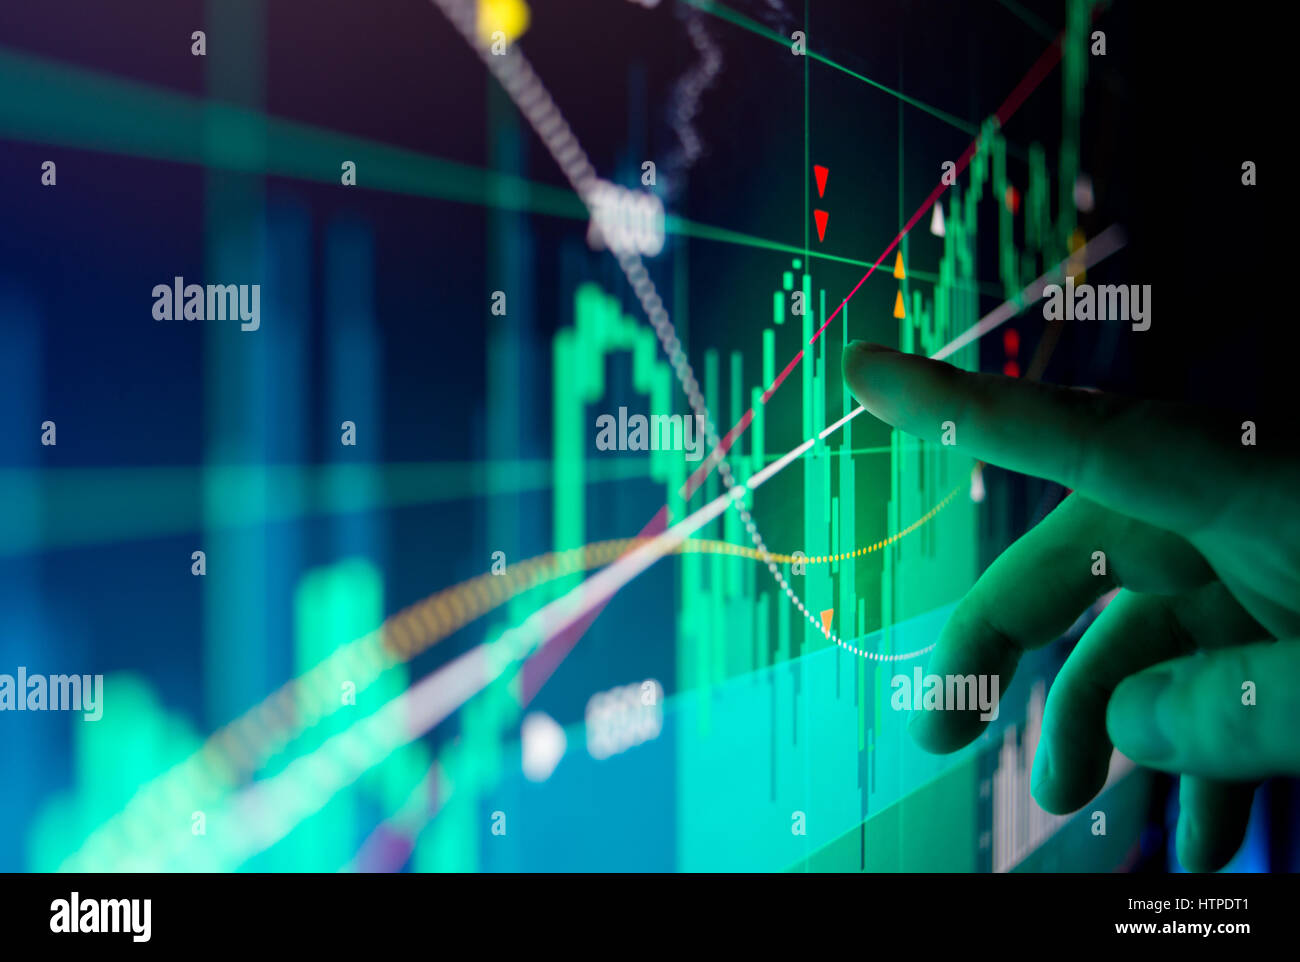 Un travailleur de la ville illustre l'analyse des données financières de marché boursier sur un écran. Banque D'Images